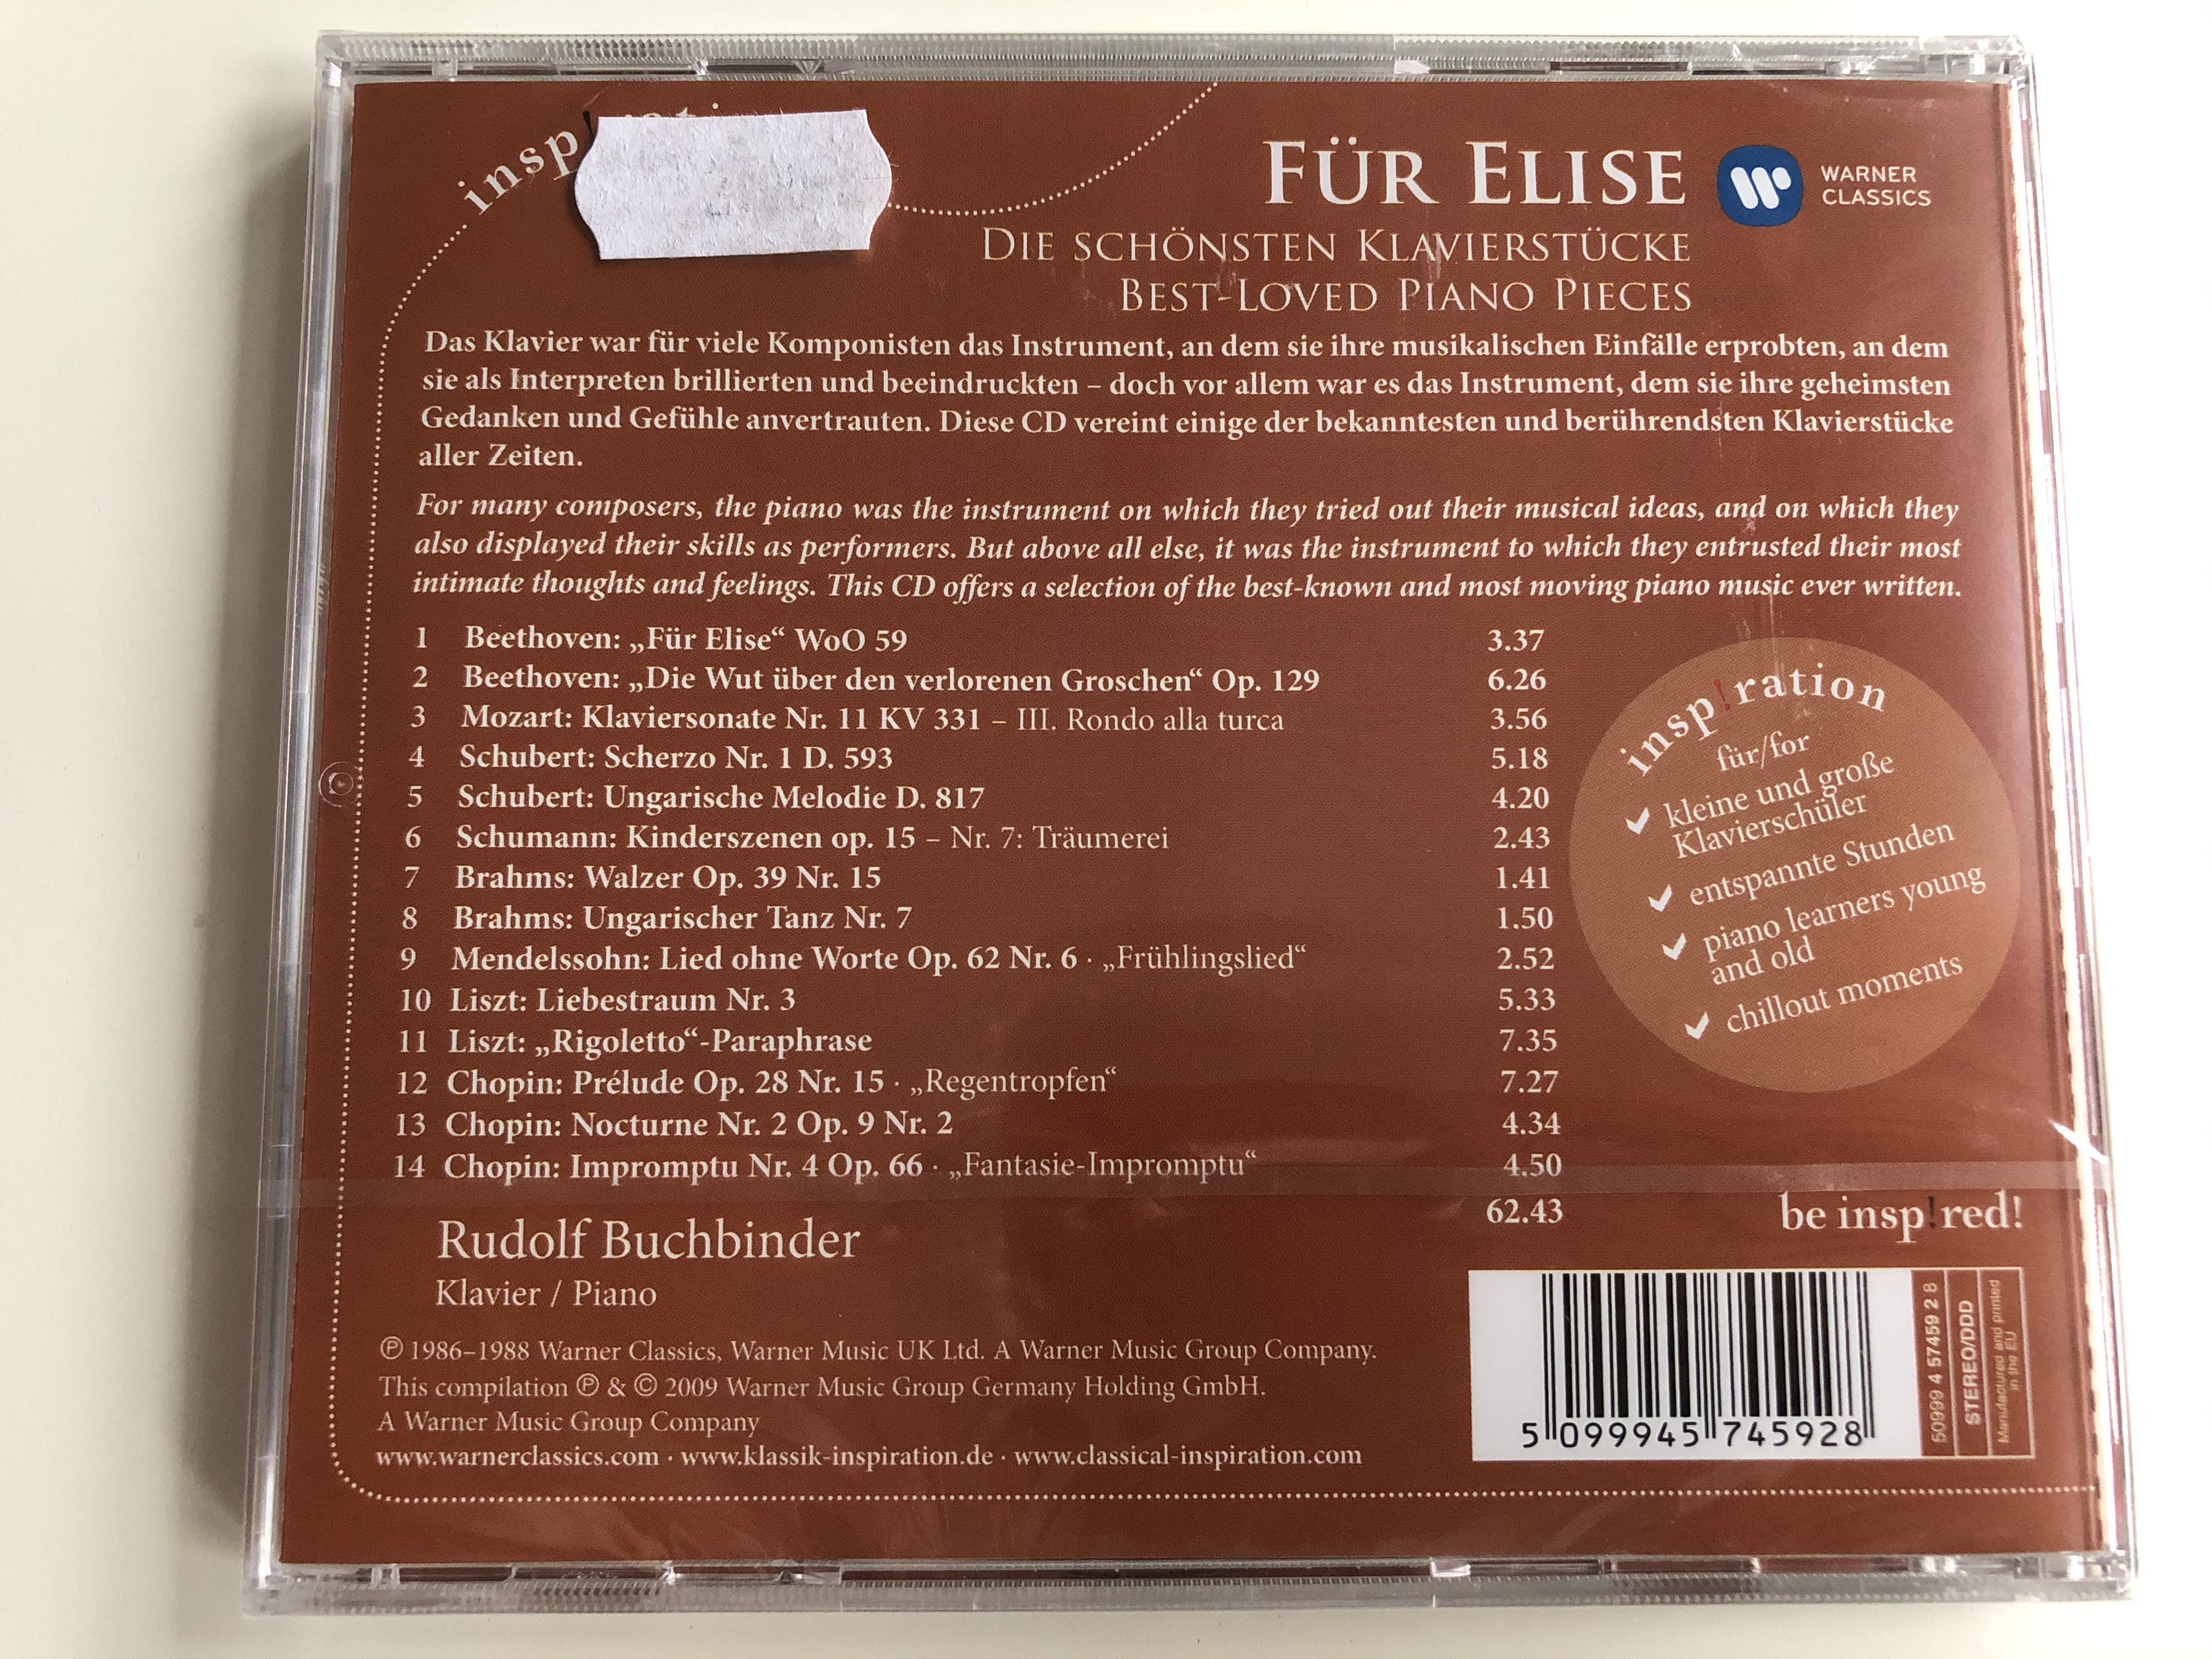 fur-elise-die-schonsten-klavierstucke-best-loved-piano-pieces-insp-ration-rudolf-buchbinder-warner-classics-audio-cd-2009-5099945745928-2-.jpg